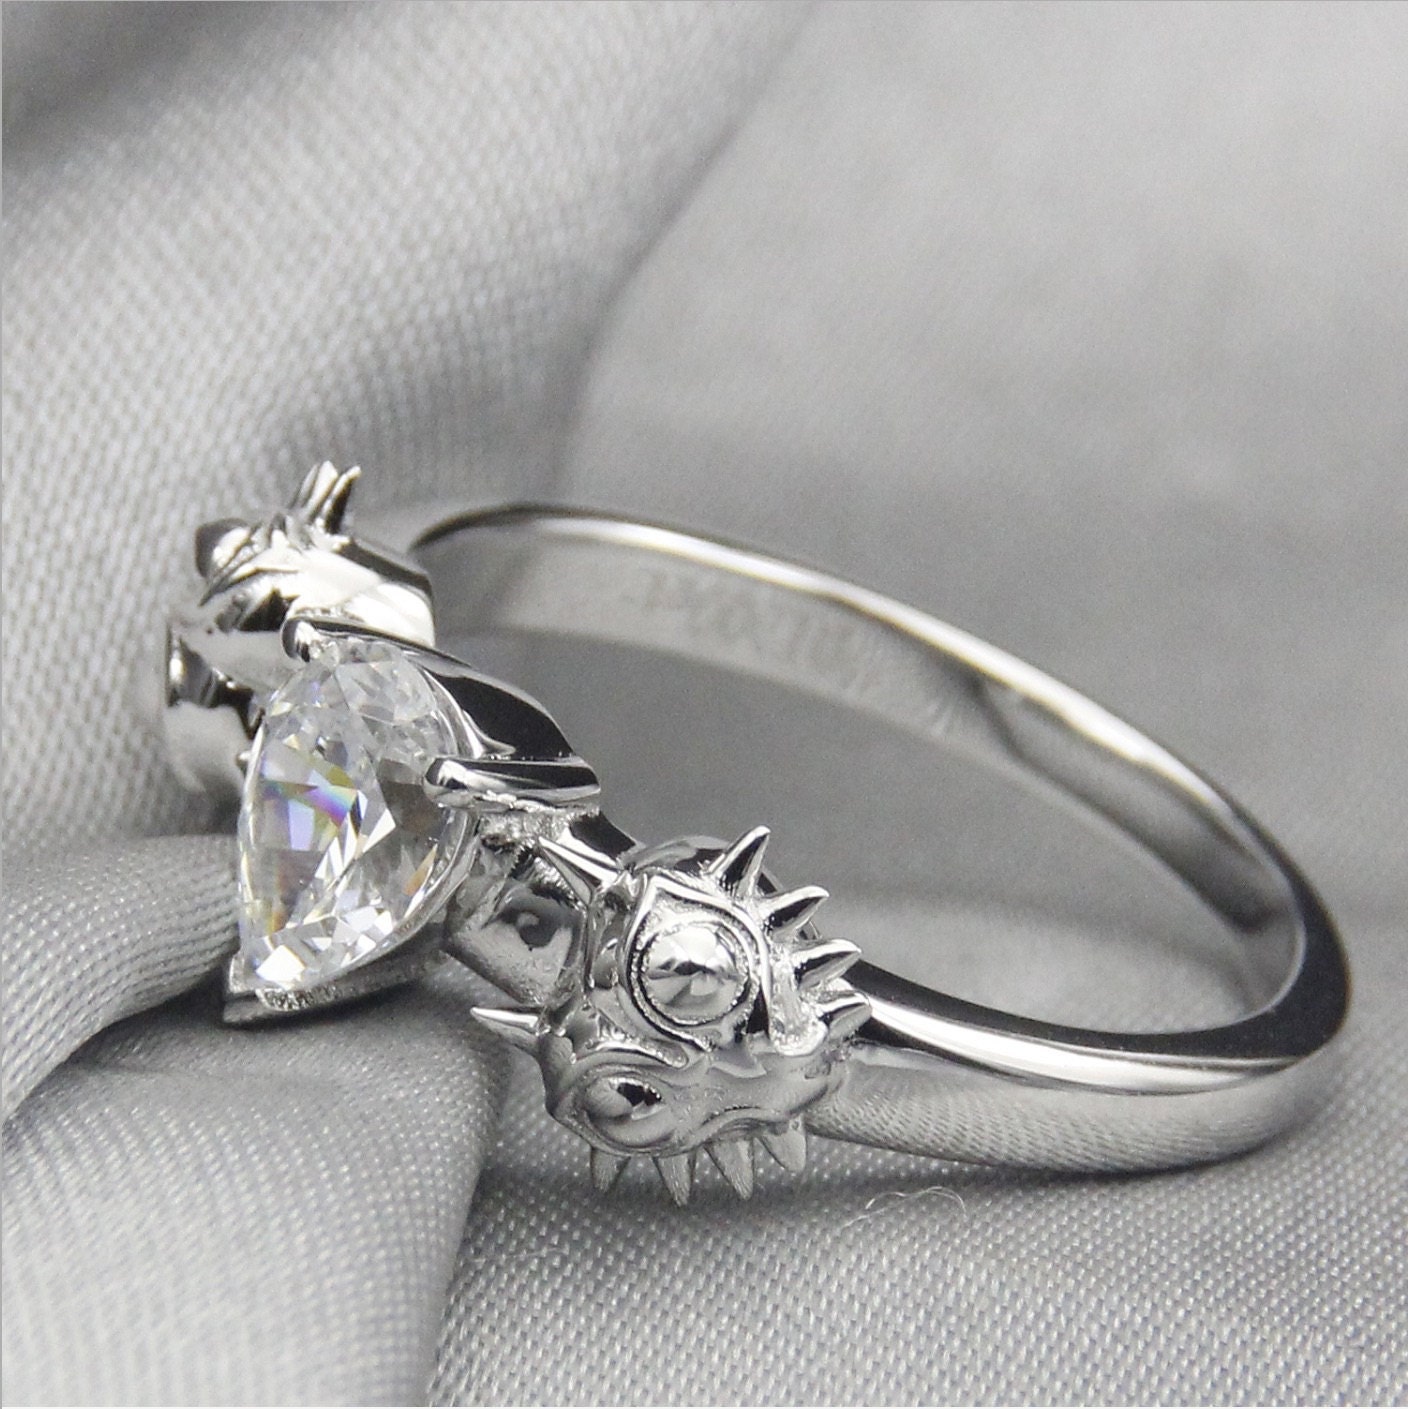 Moons Tear Engagement Promise Wedding Ring Bit Gamer Video | Etsy